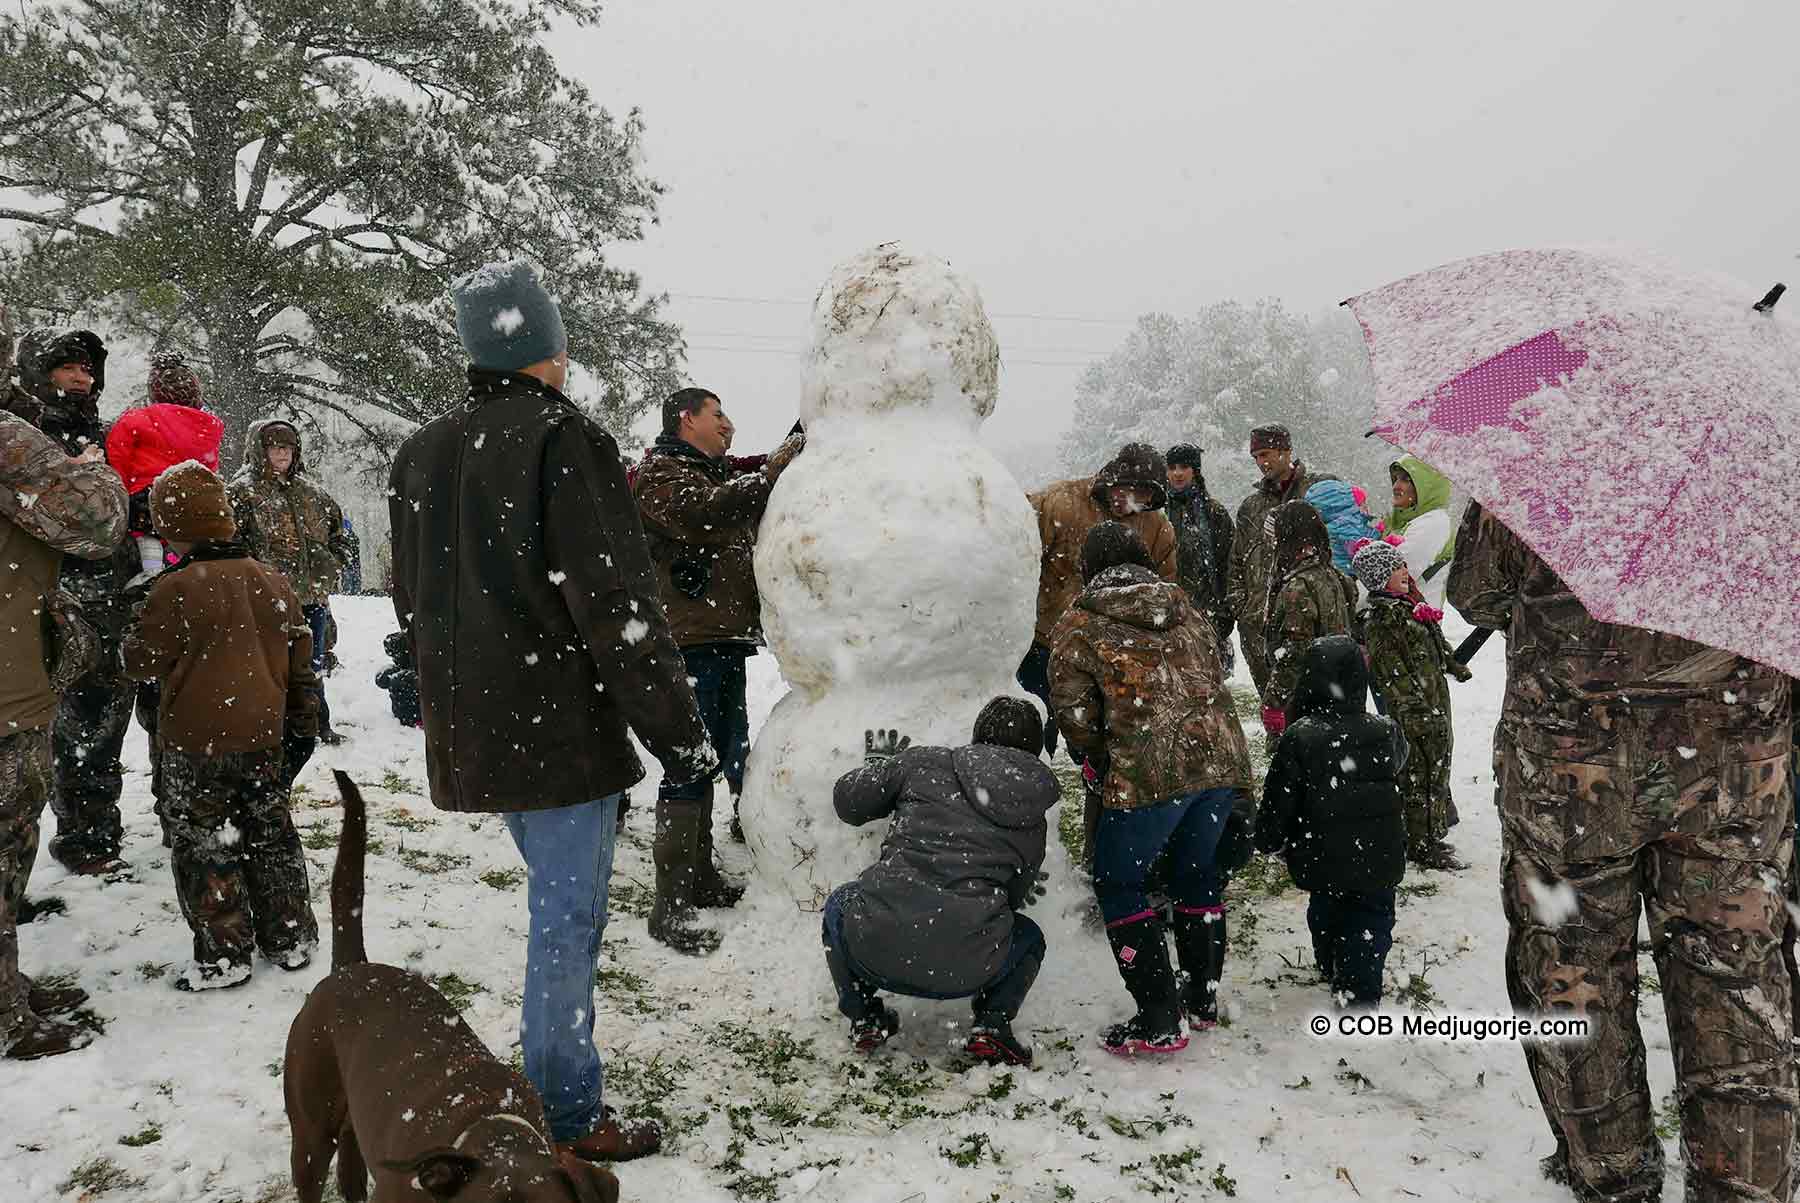 building snowman